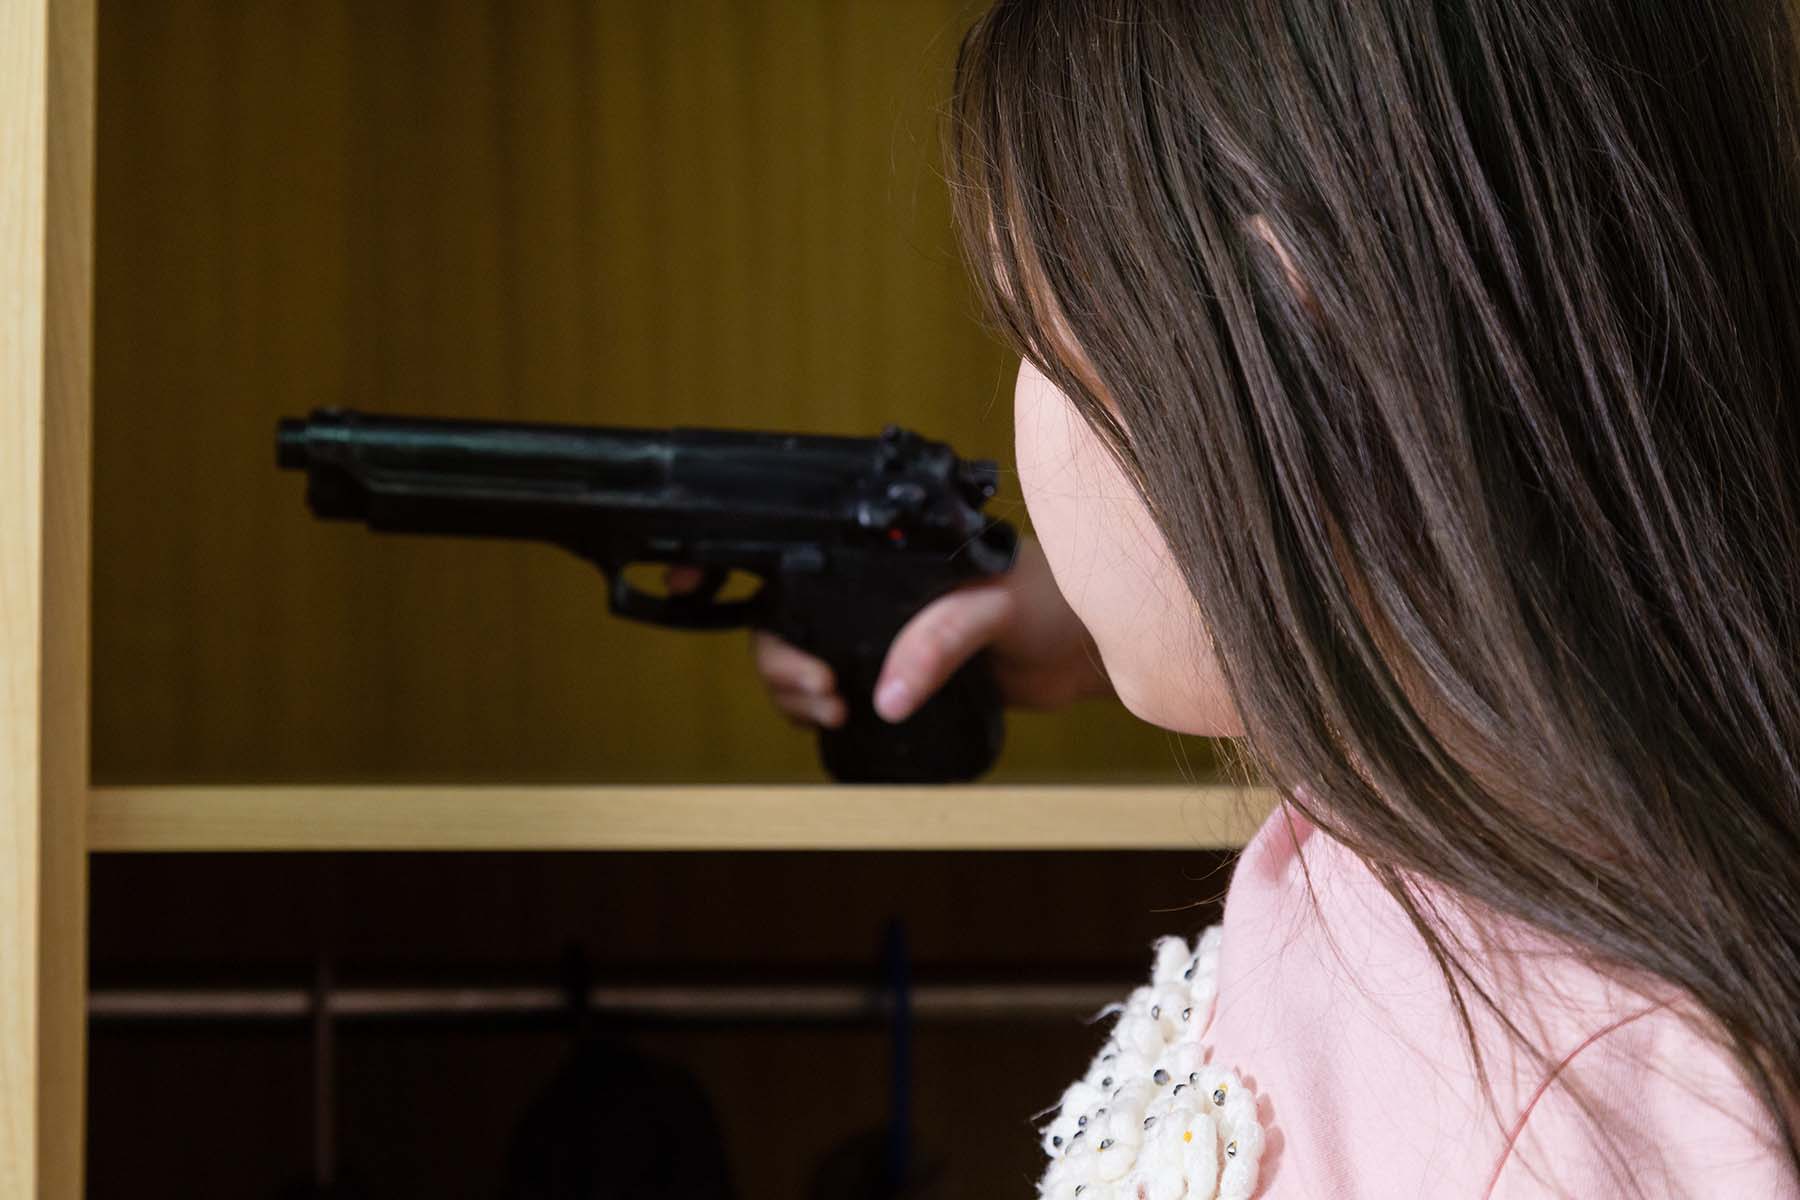 Little girl getting handgun out of closet